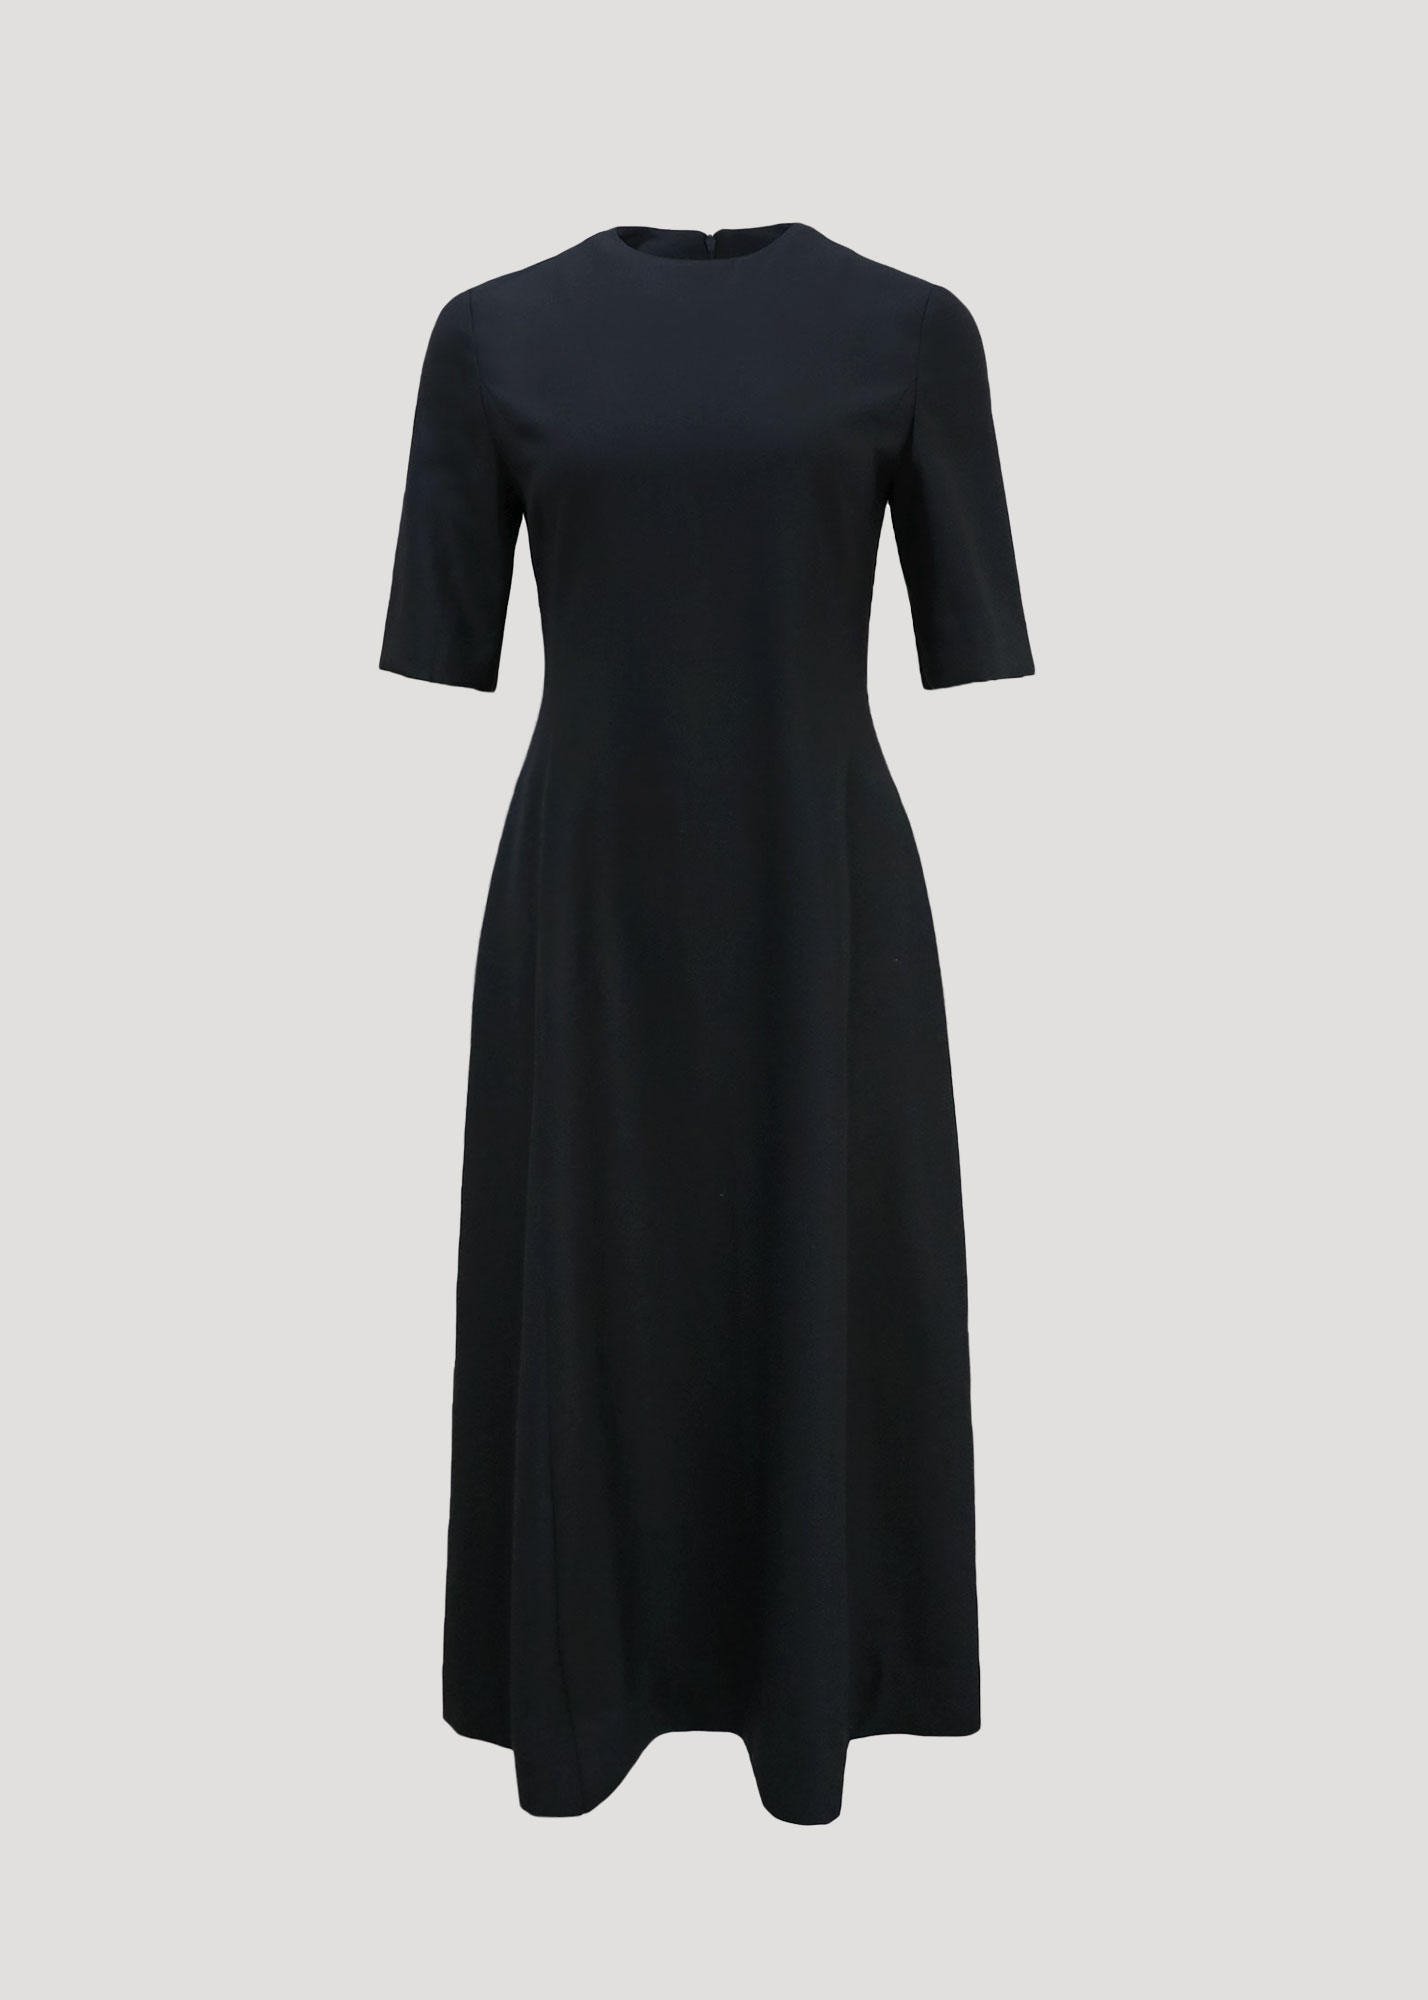 마이 리틀 블랙 드레스 High quality classic wear